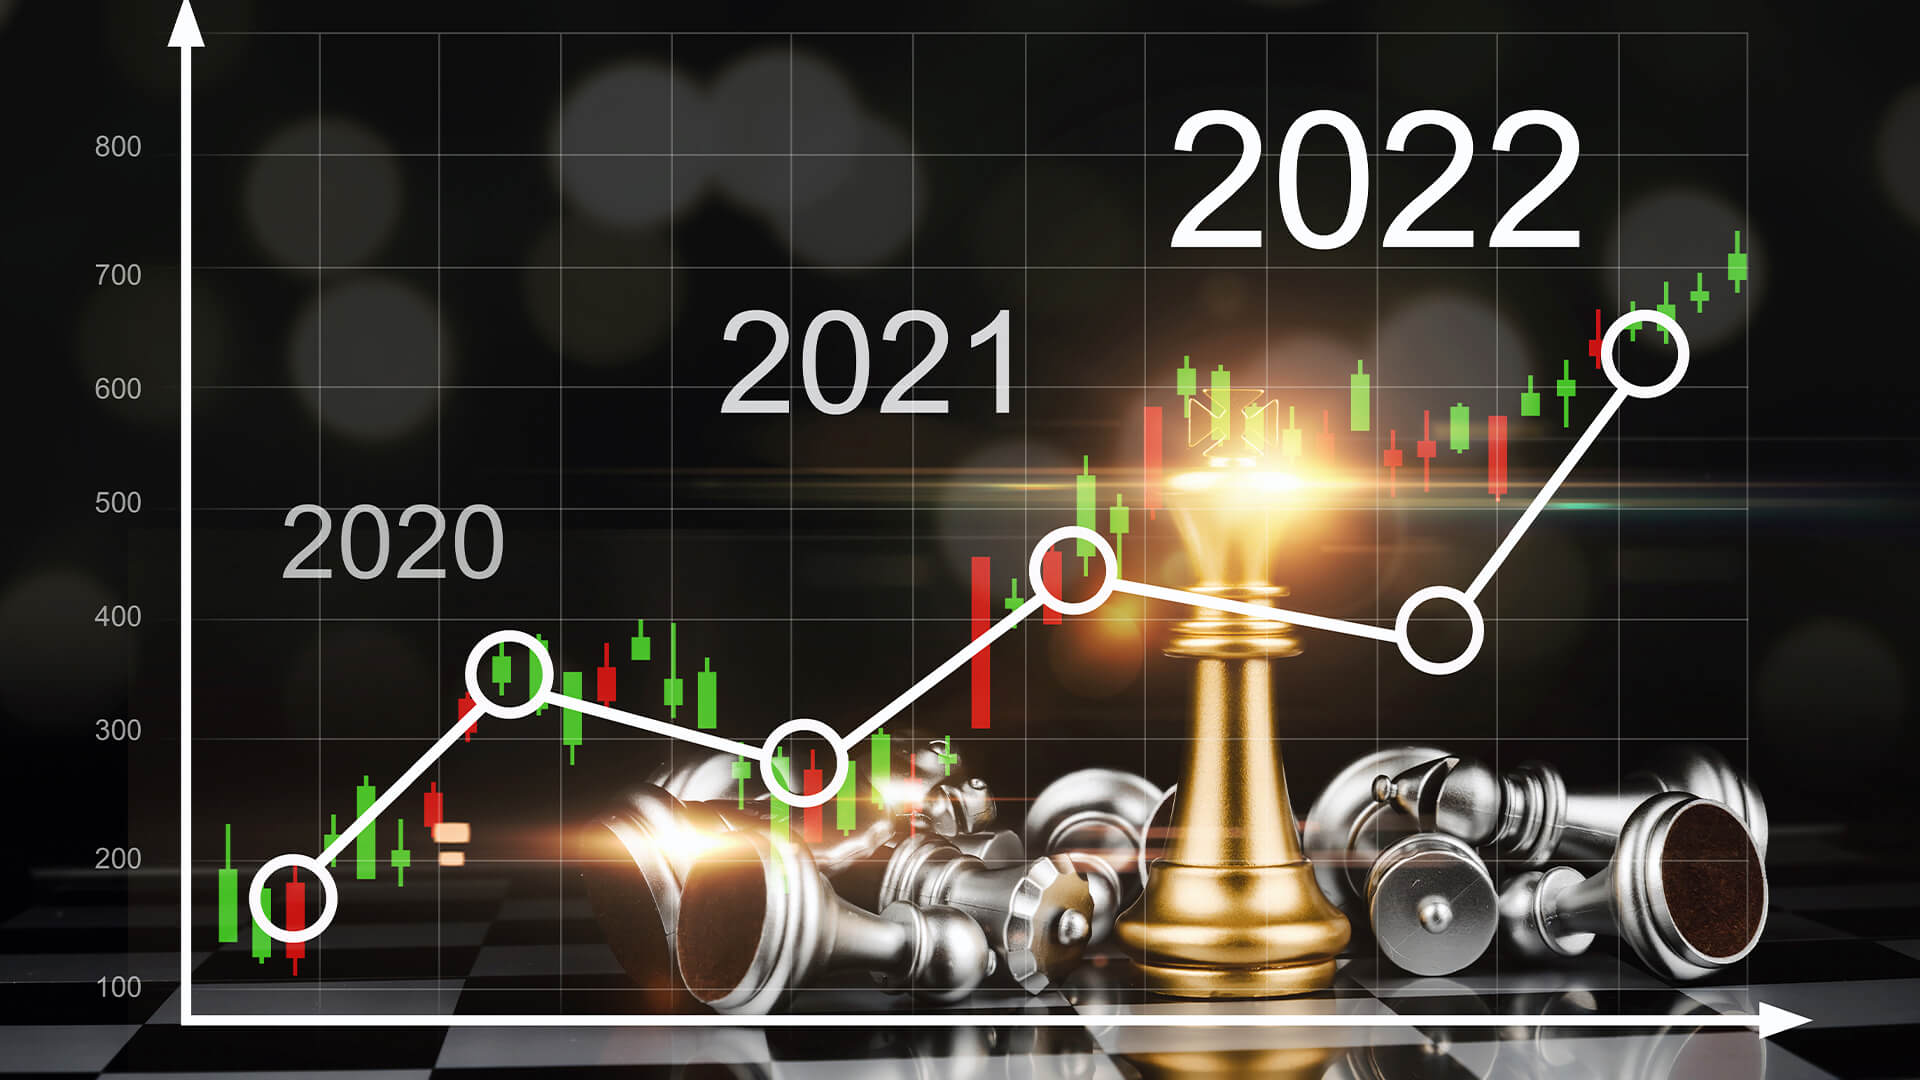 crypto 2018 losses on 2022 return